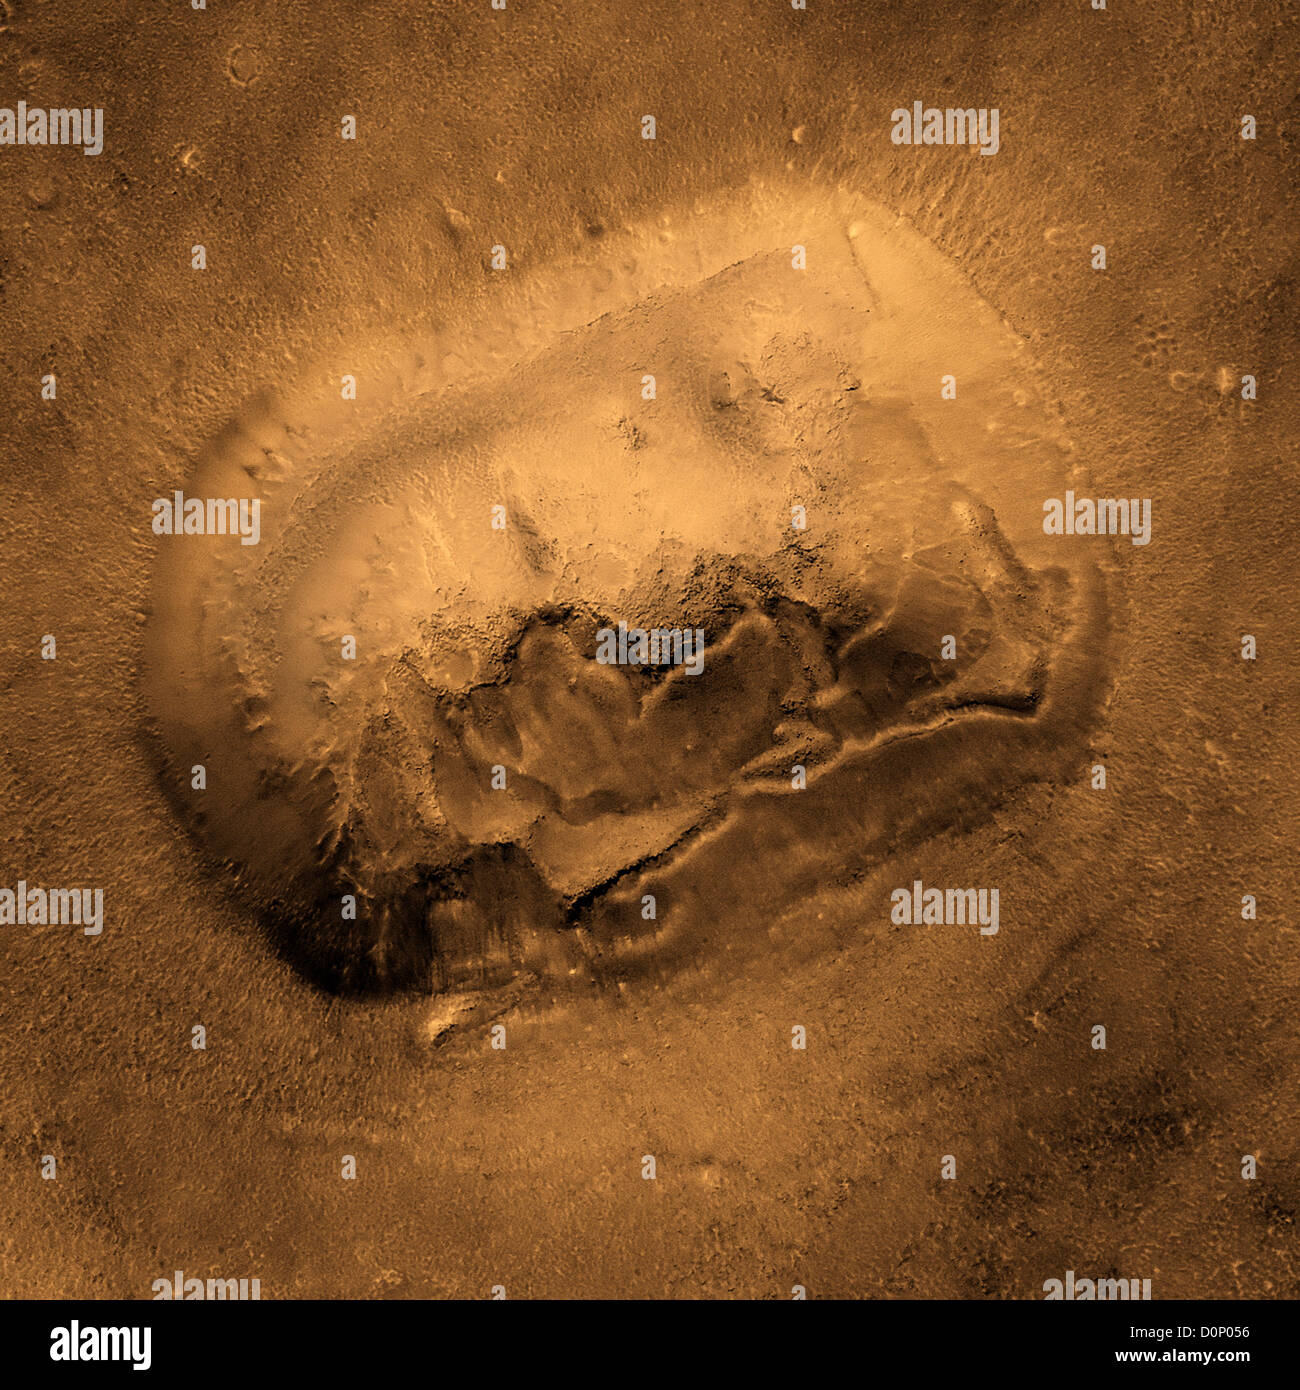 Mesa de la 'visage sur Mars' vu par Mars Global Surveyor Banque D'Images